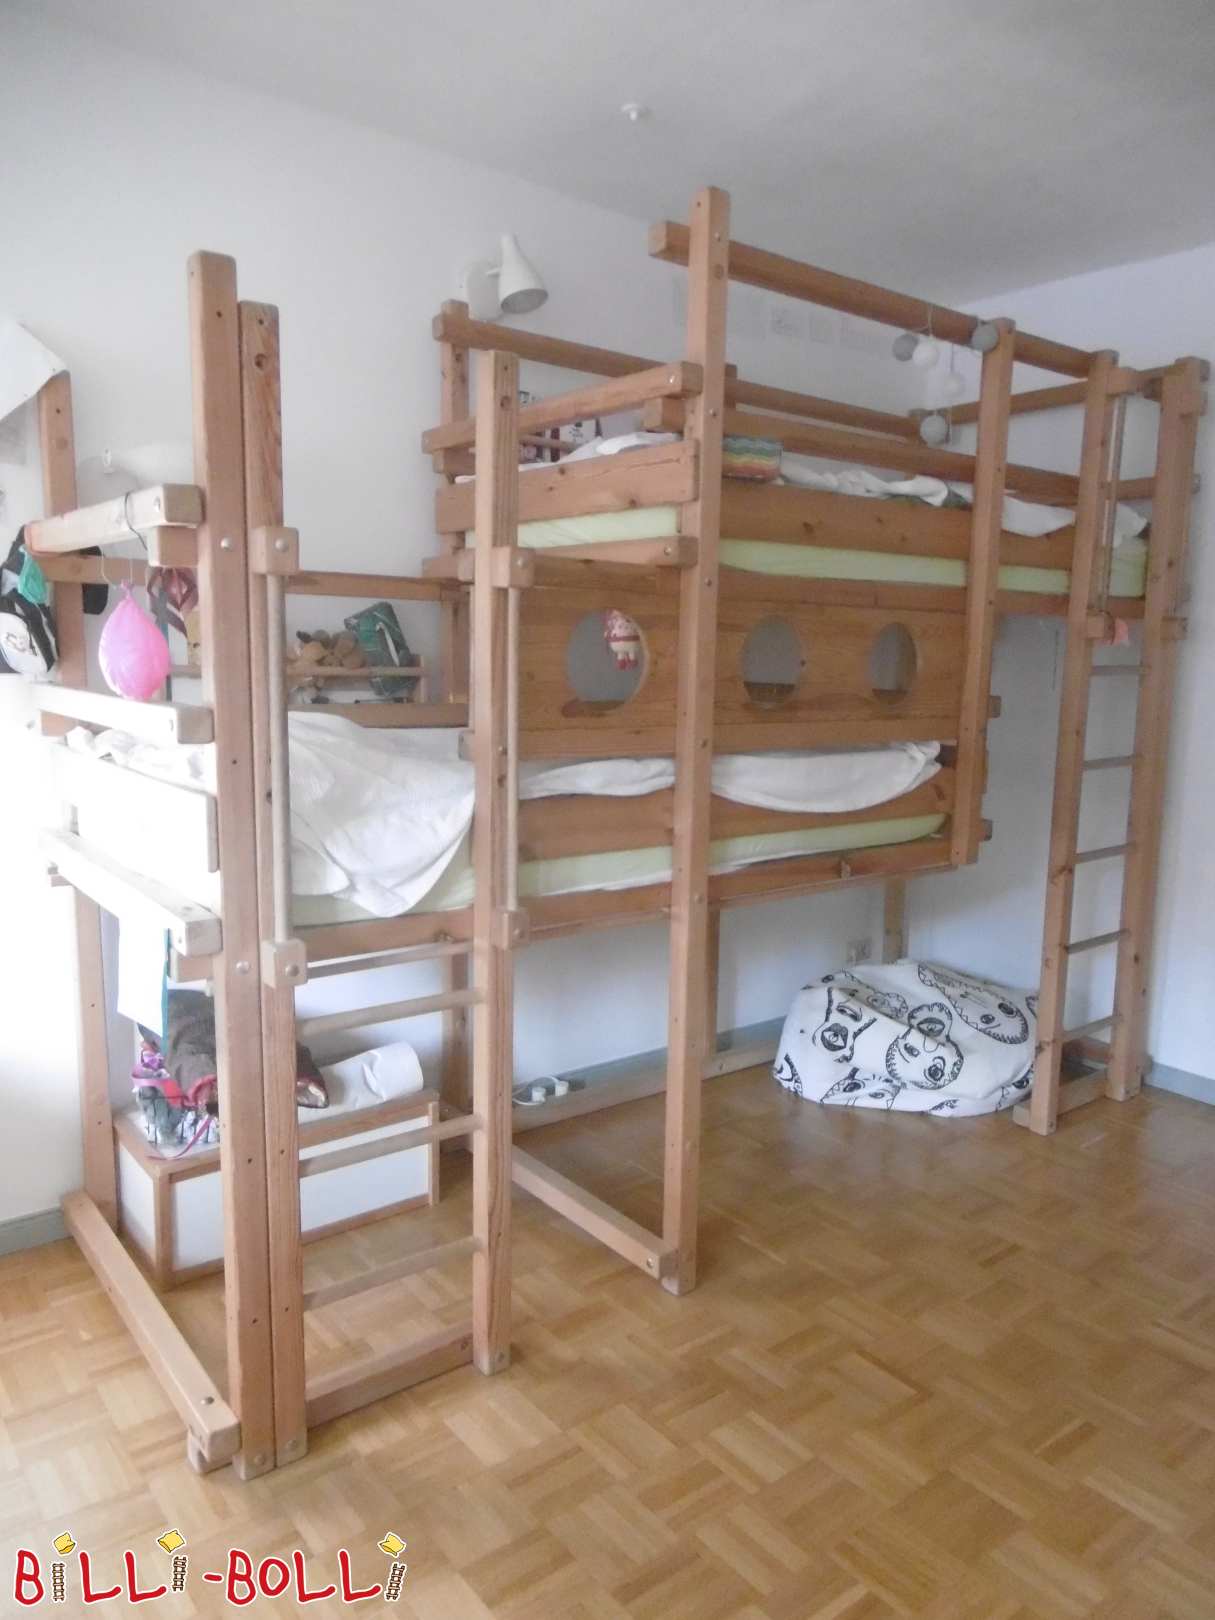 Farklı montaj yüksekliklerine sahip her iki üst yatak (Kategori: Her iki üst ranzalar kullanılmış)